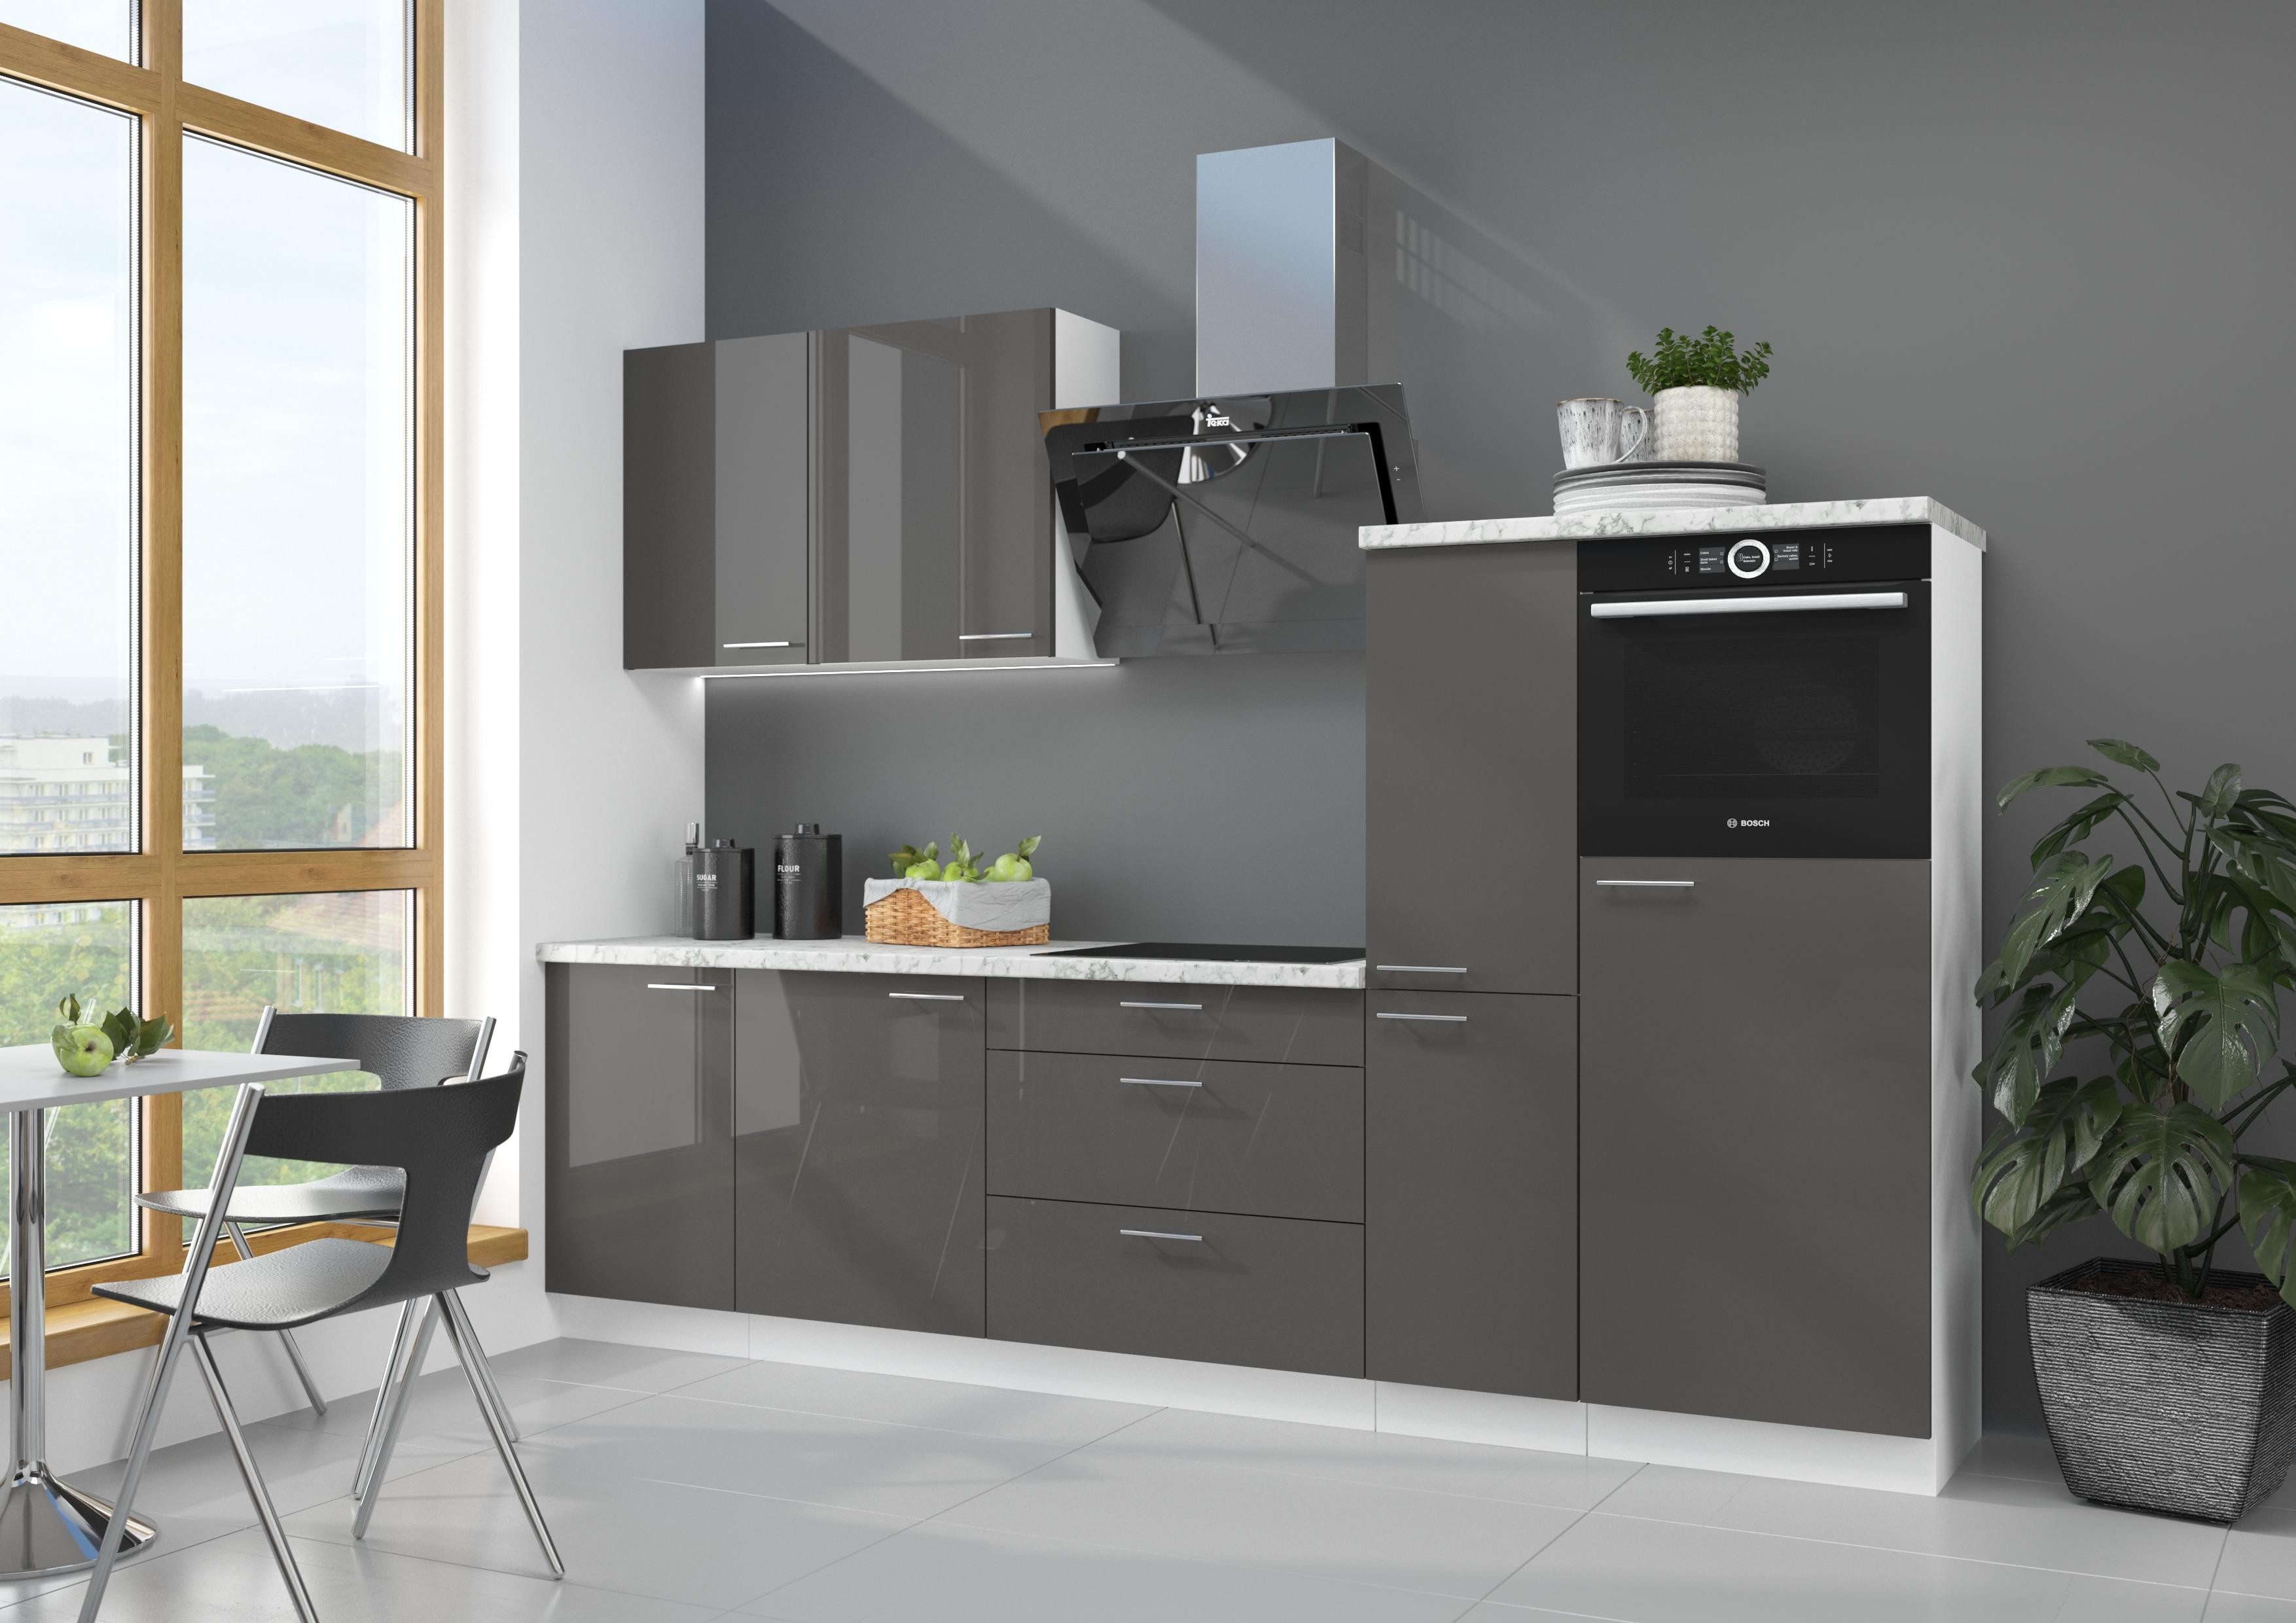 ROYAL24_MARKT Küchenzeile - Zeitgemäßer Stil mit eleganter Ausstrahlung, Moderne Möbel - ausgezeichneter Qualität